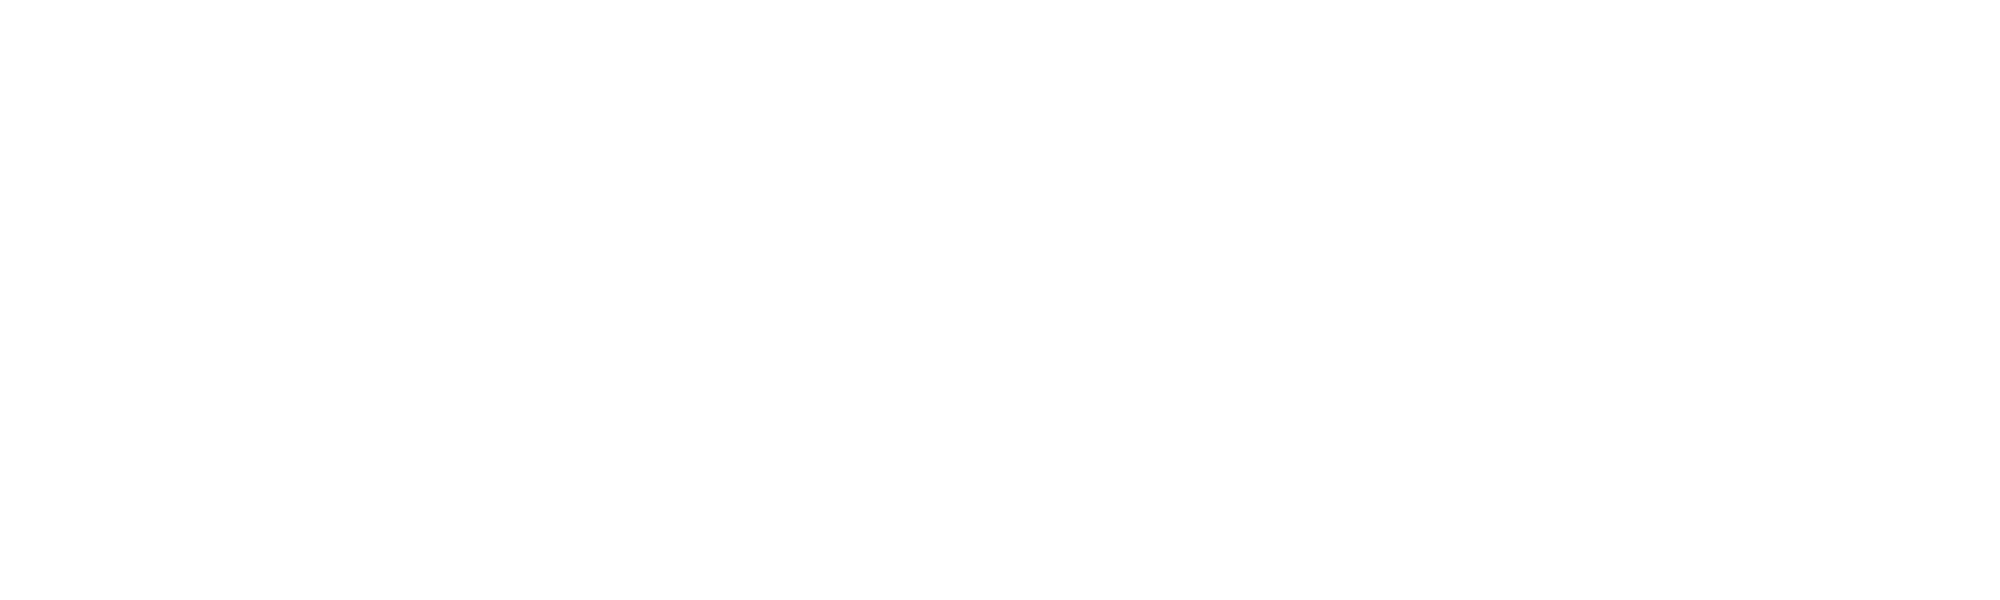 banner_contact_bg_upper